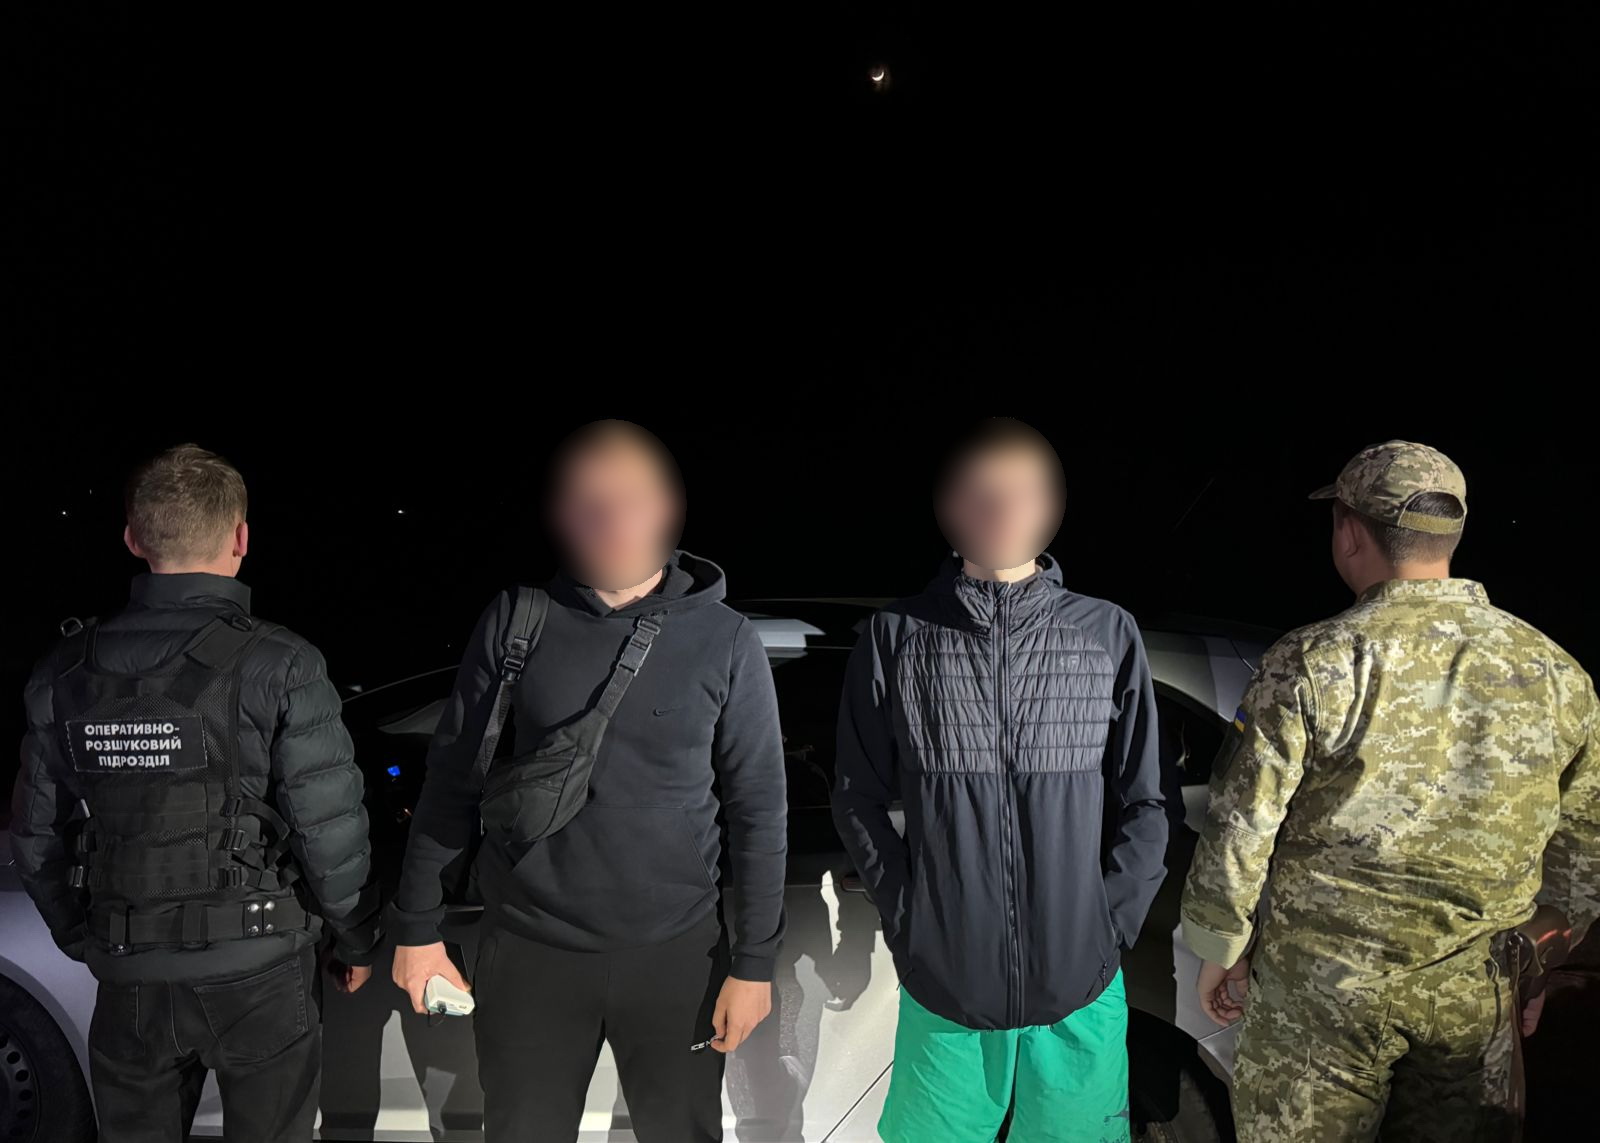 Буковинські прикордонники затримали двох “туристів”, які прямували до Румунії за 4500$